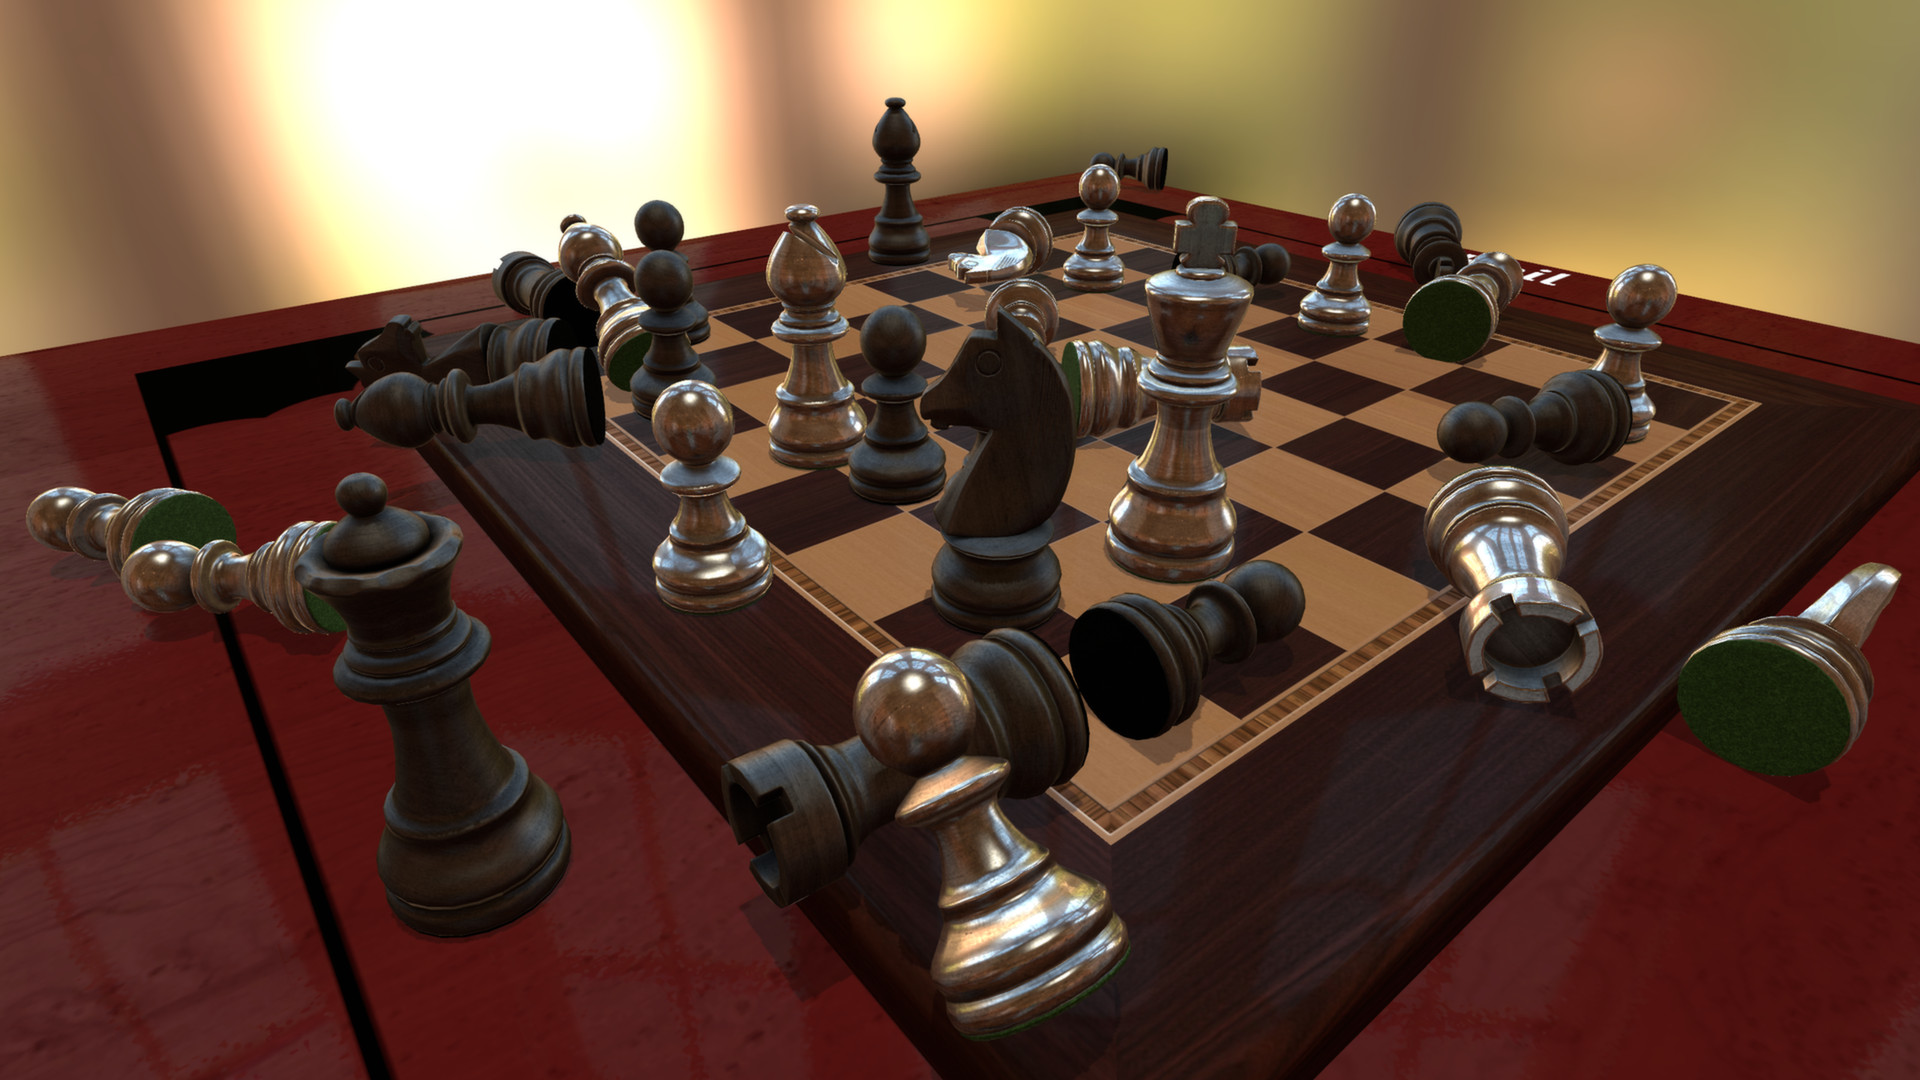 Buy Battle vs. Chess on GAMESLOAD